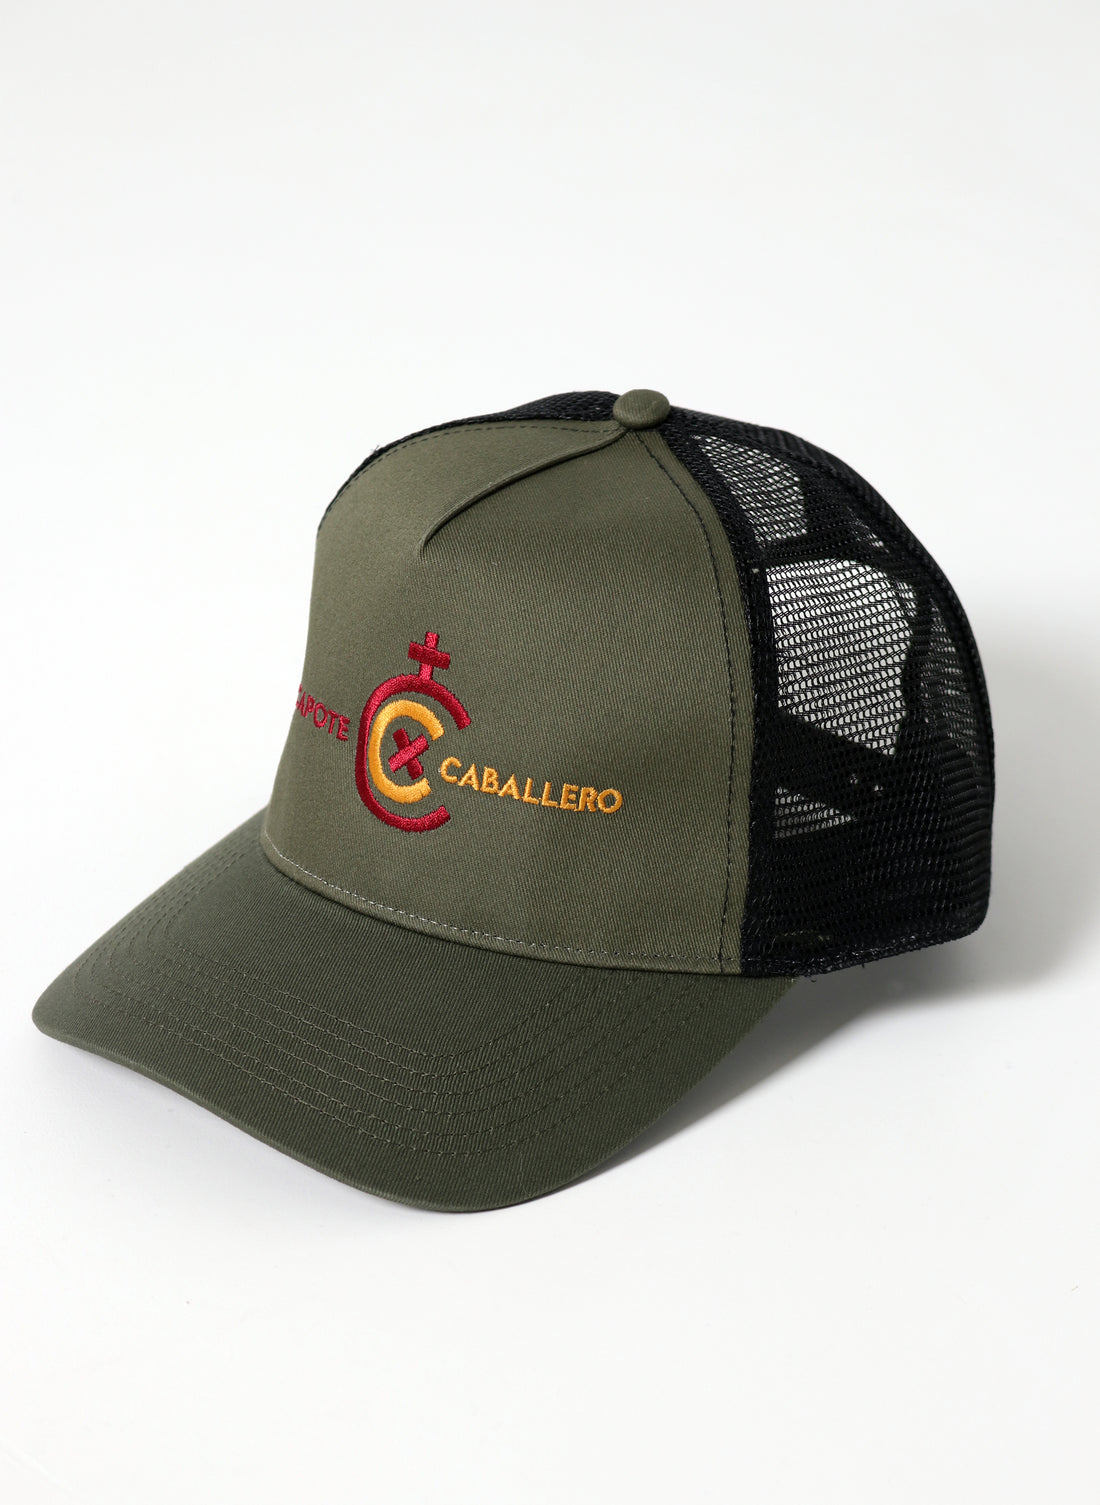 Khaki x Caballero Trucker Cap